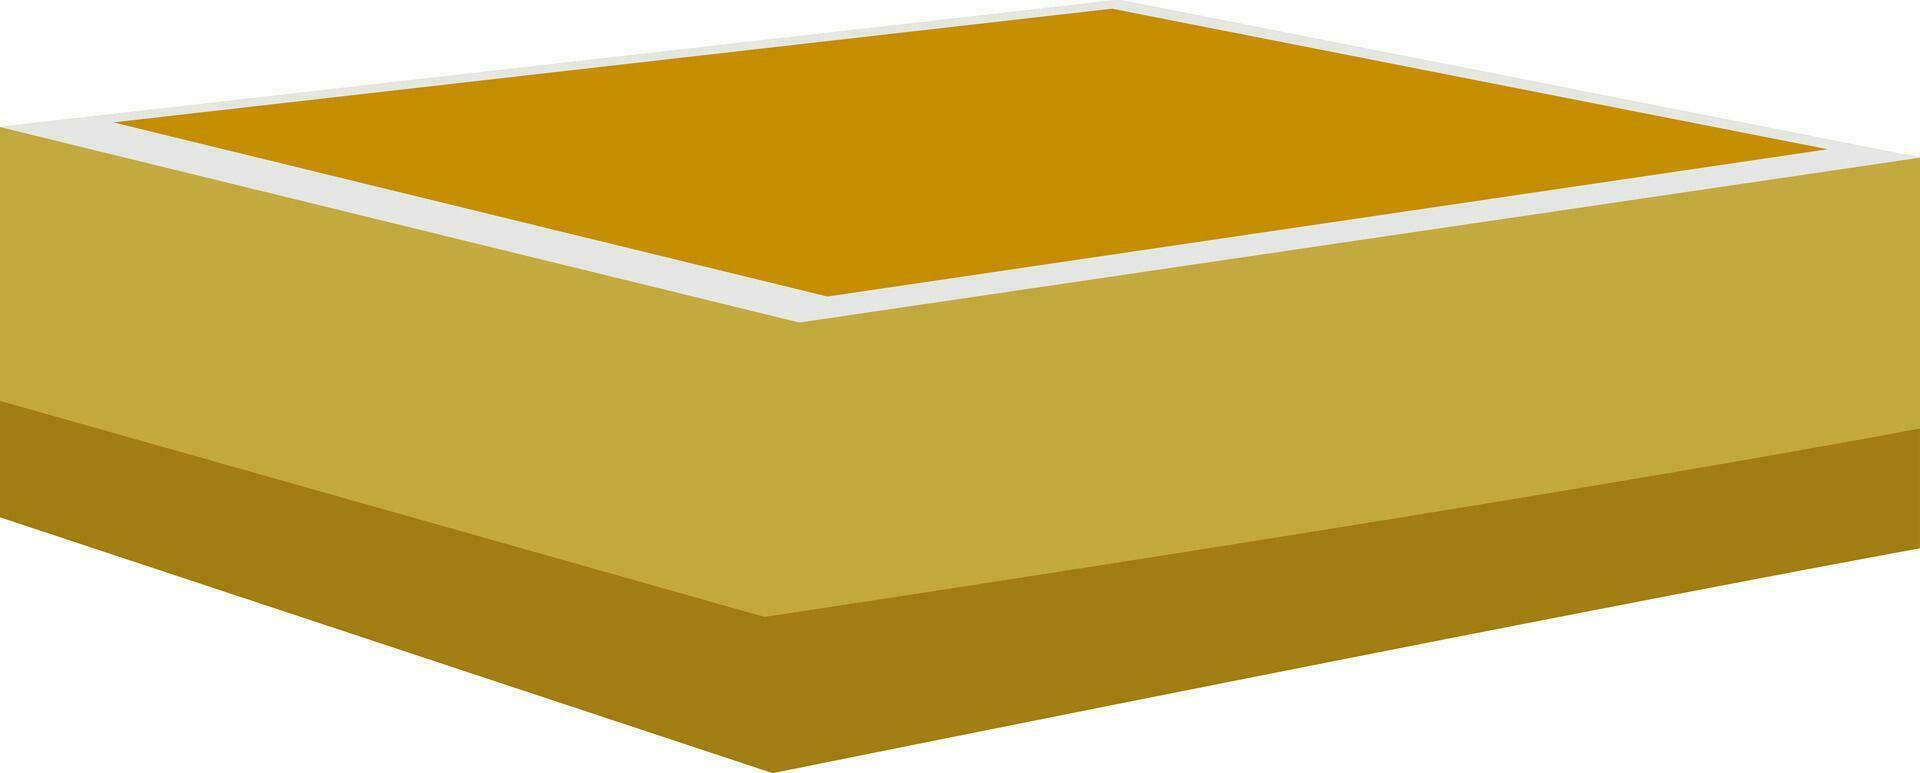 Rectangular shape box isolated on white background. vector